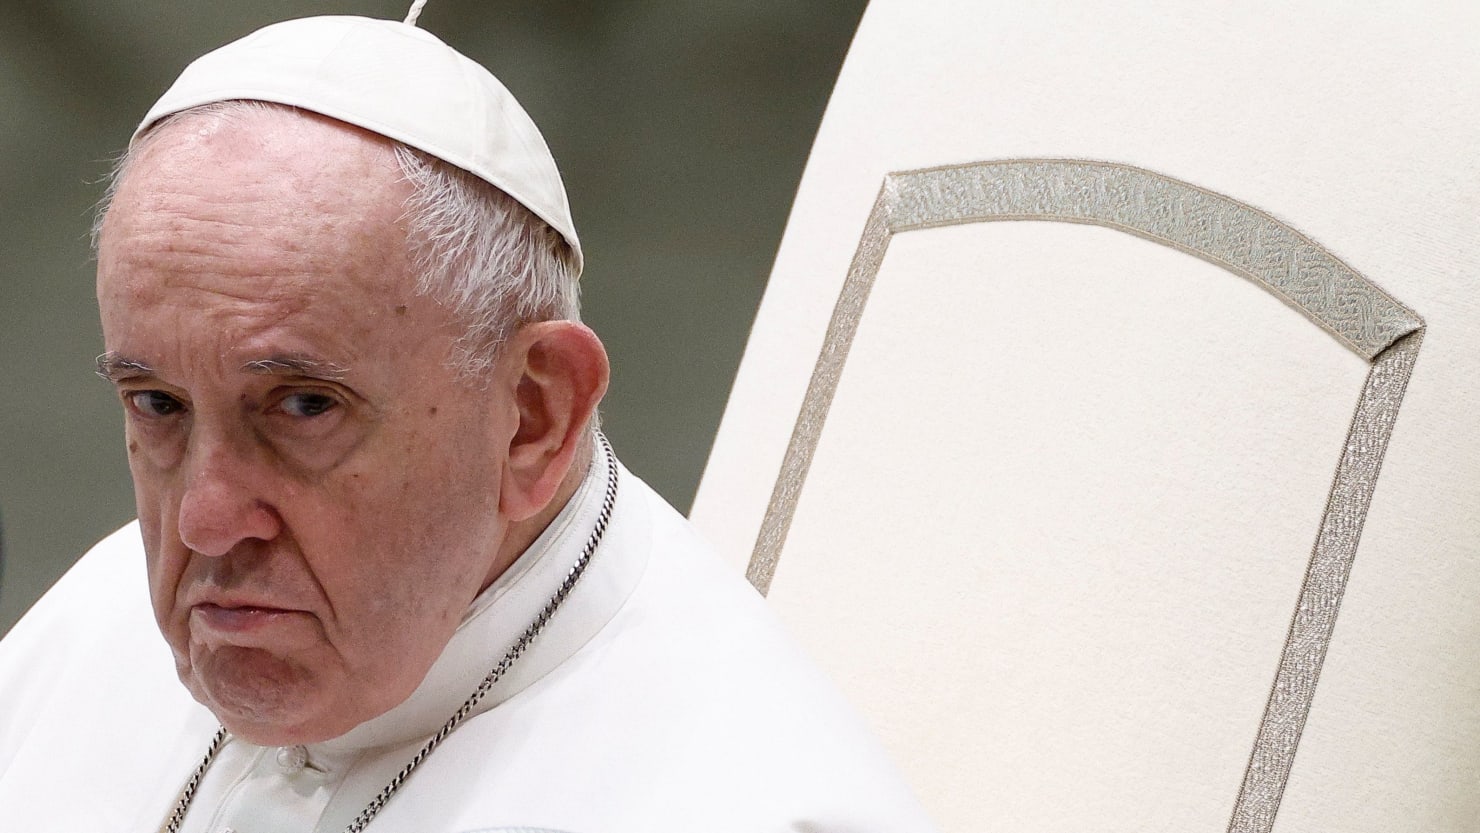 El Papa Francisco admite finalmente que algunos sacerdotes católicos son “deplorables